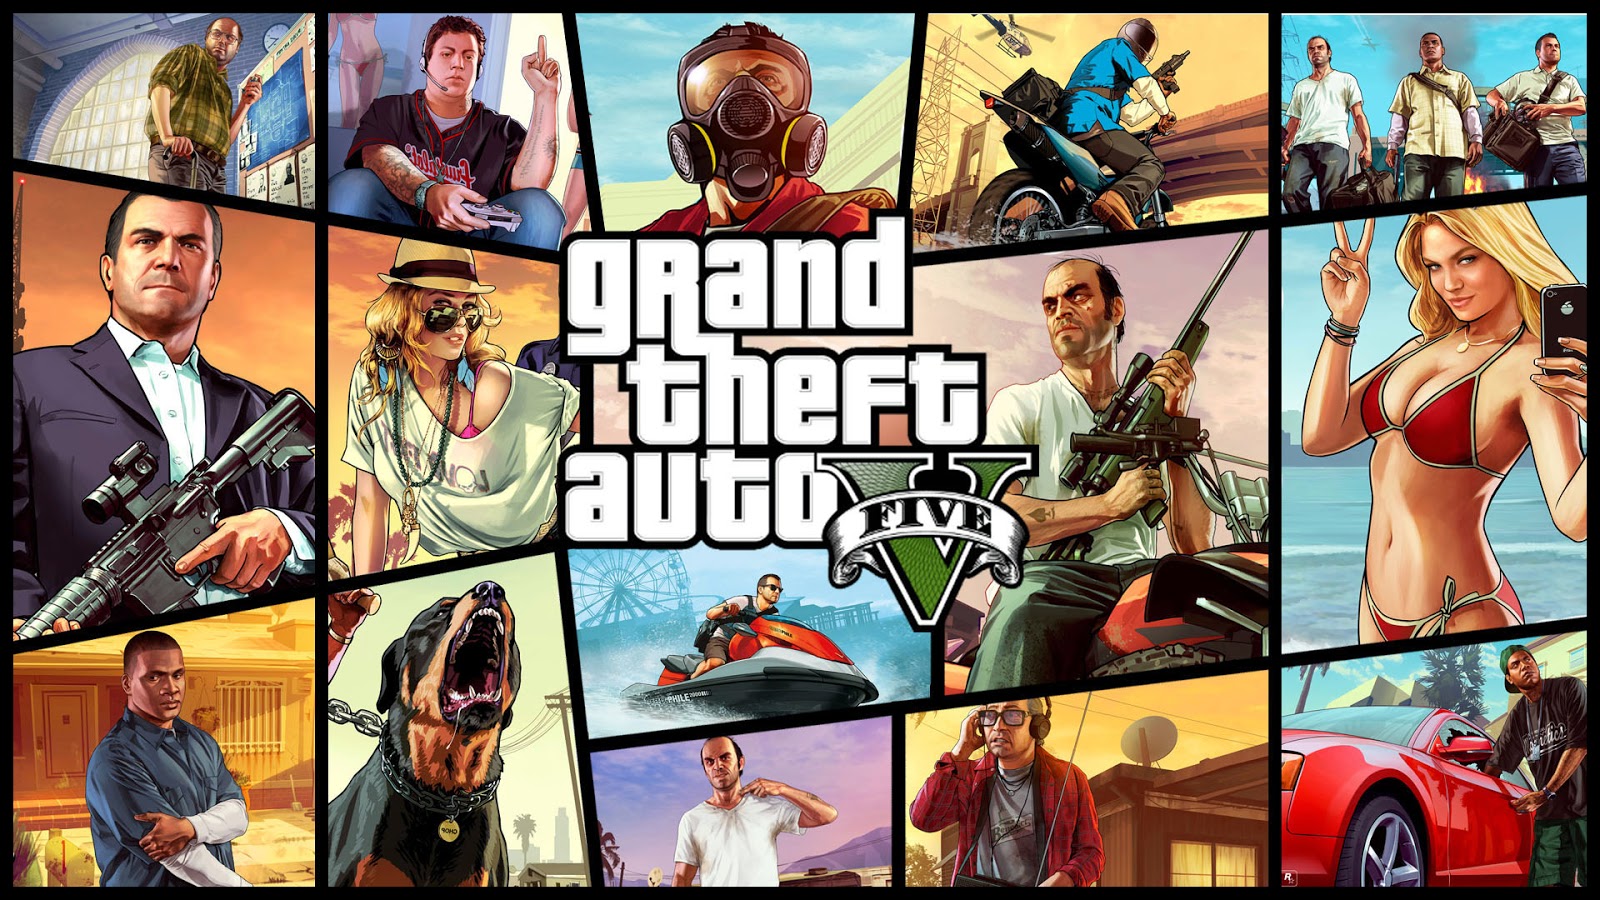 بسرعة طريقة تحميل لعبة Grand Theft Auto 5 للاندرويد شغلها في ثواني لا تفوتك لعبة gta 5 كاملة